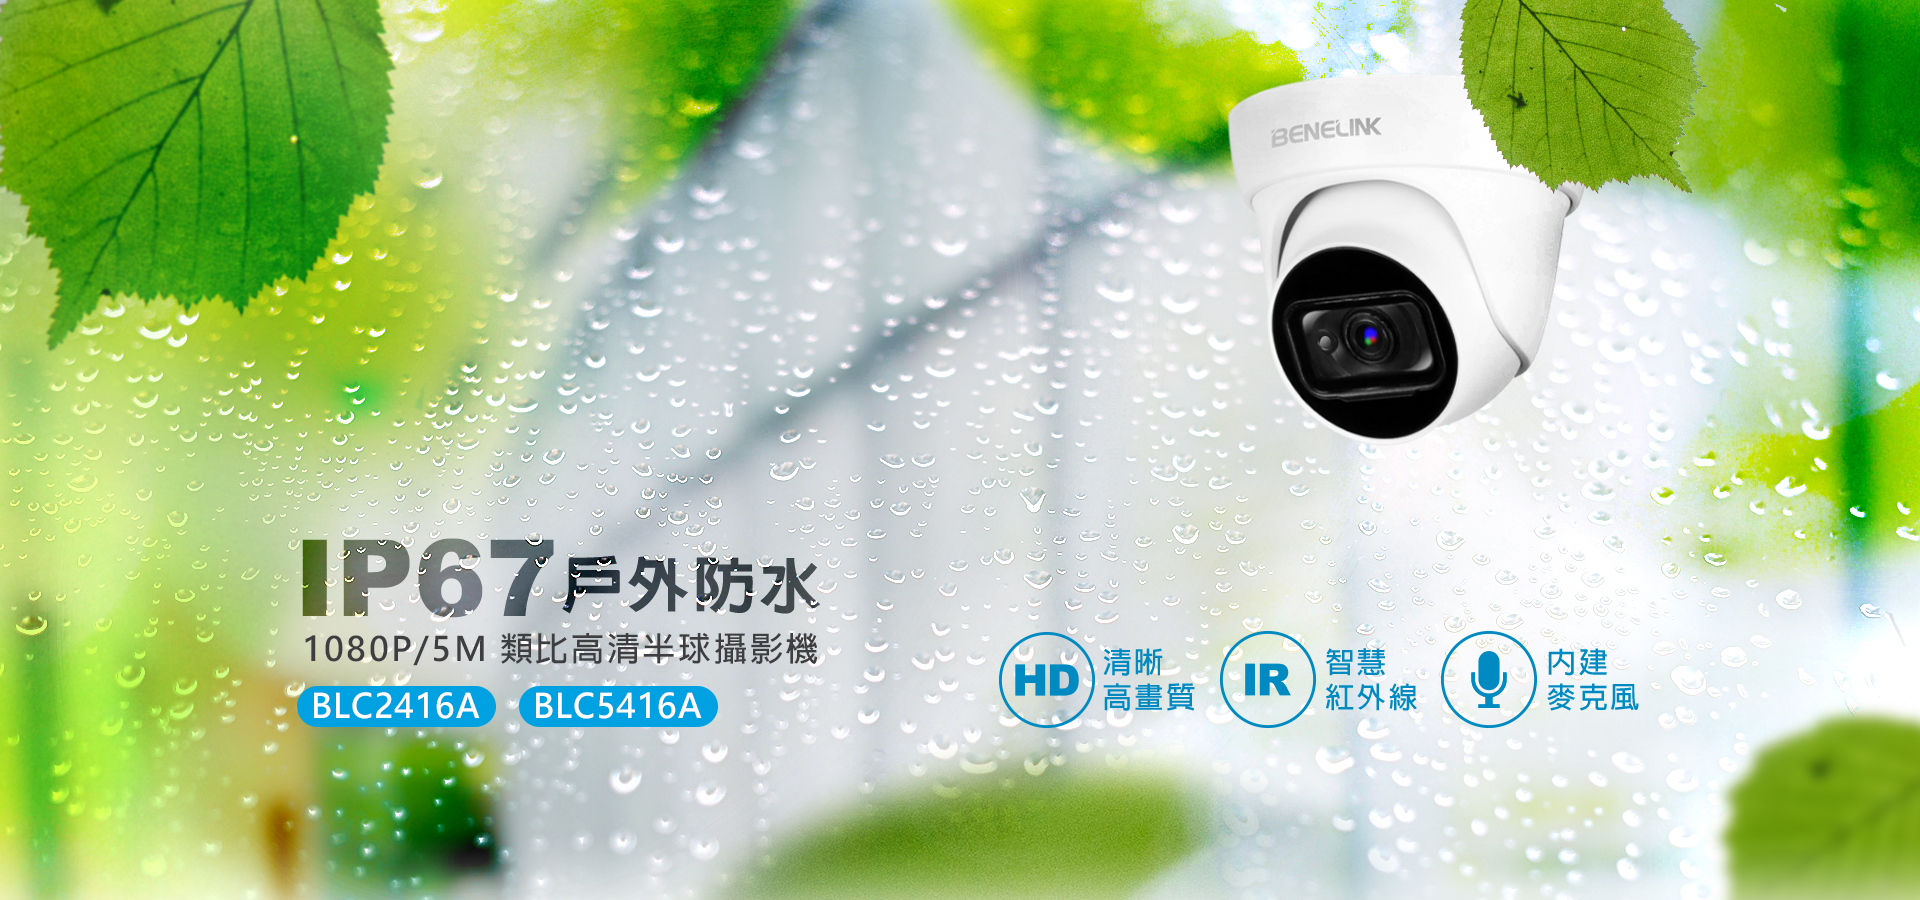 BLC2416A / BLC5416A 類比高清紅外線半球攝影機